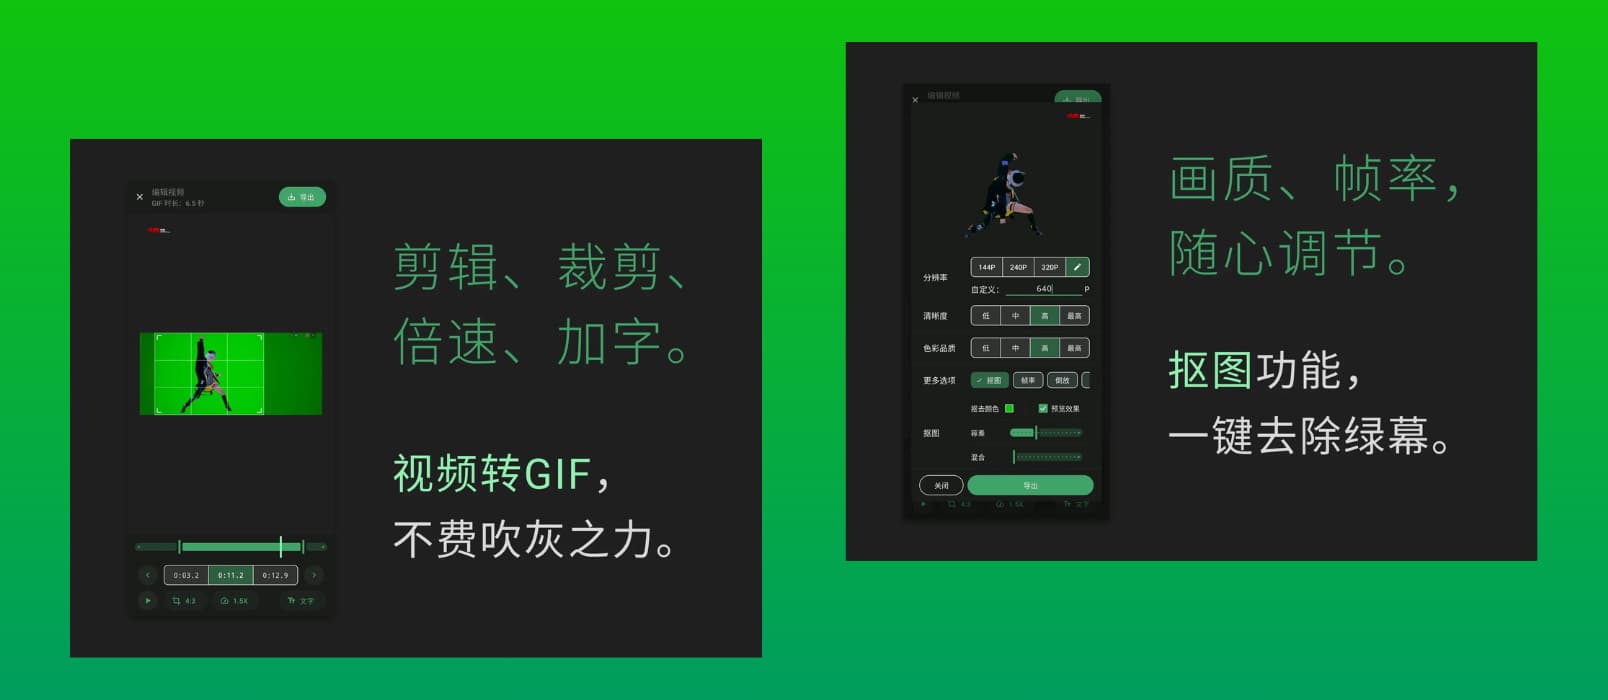 小萌GIF - 免费、开源，将视频转换为 GIF[Android]